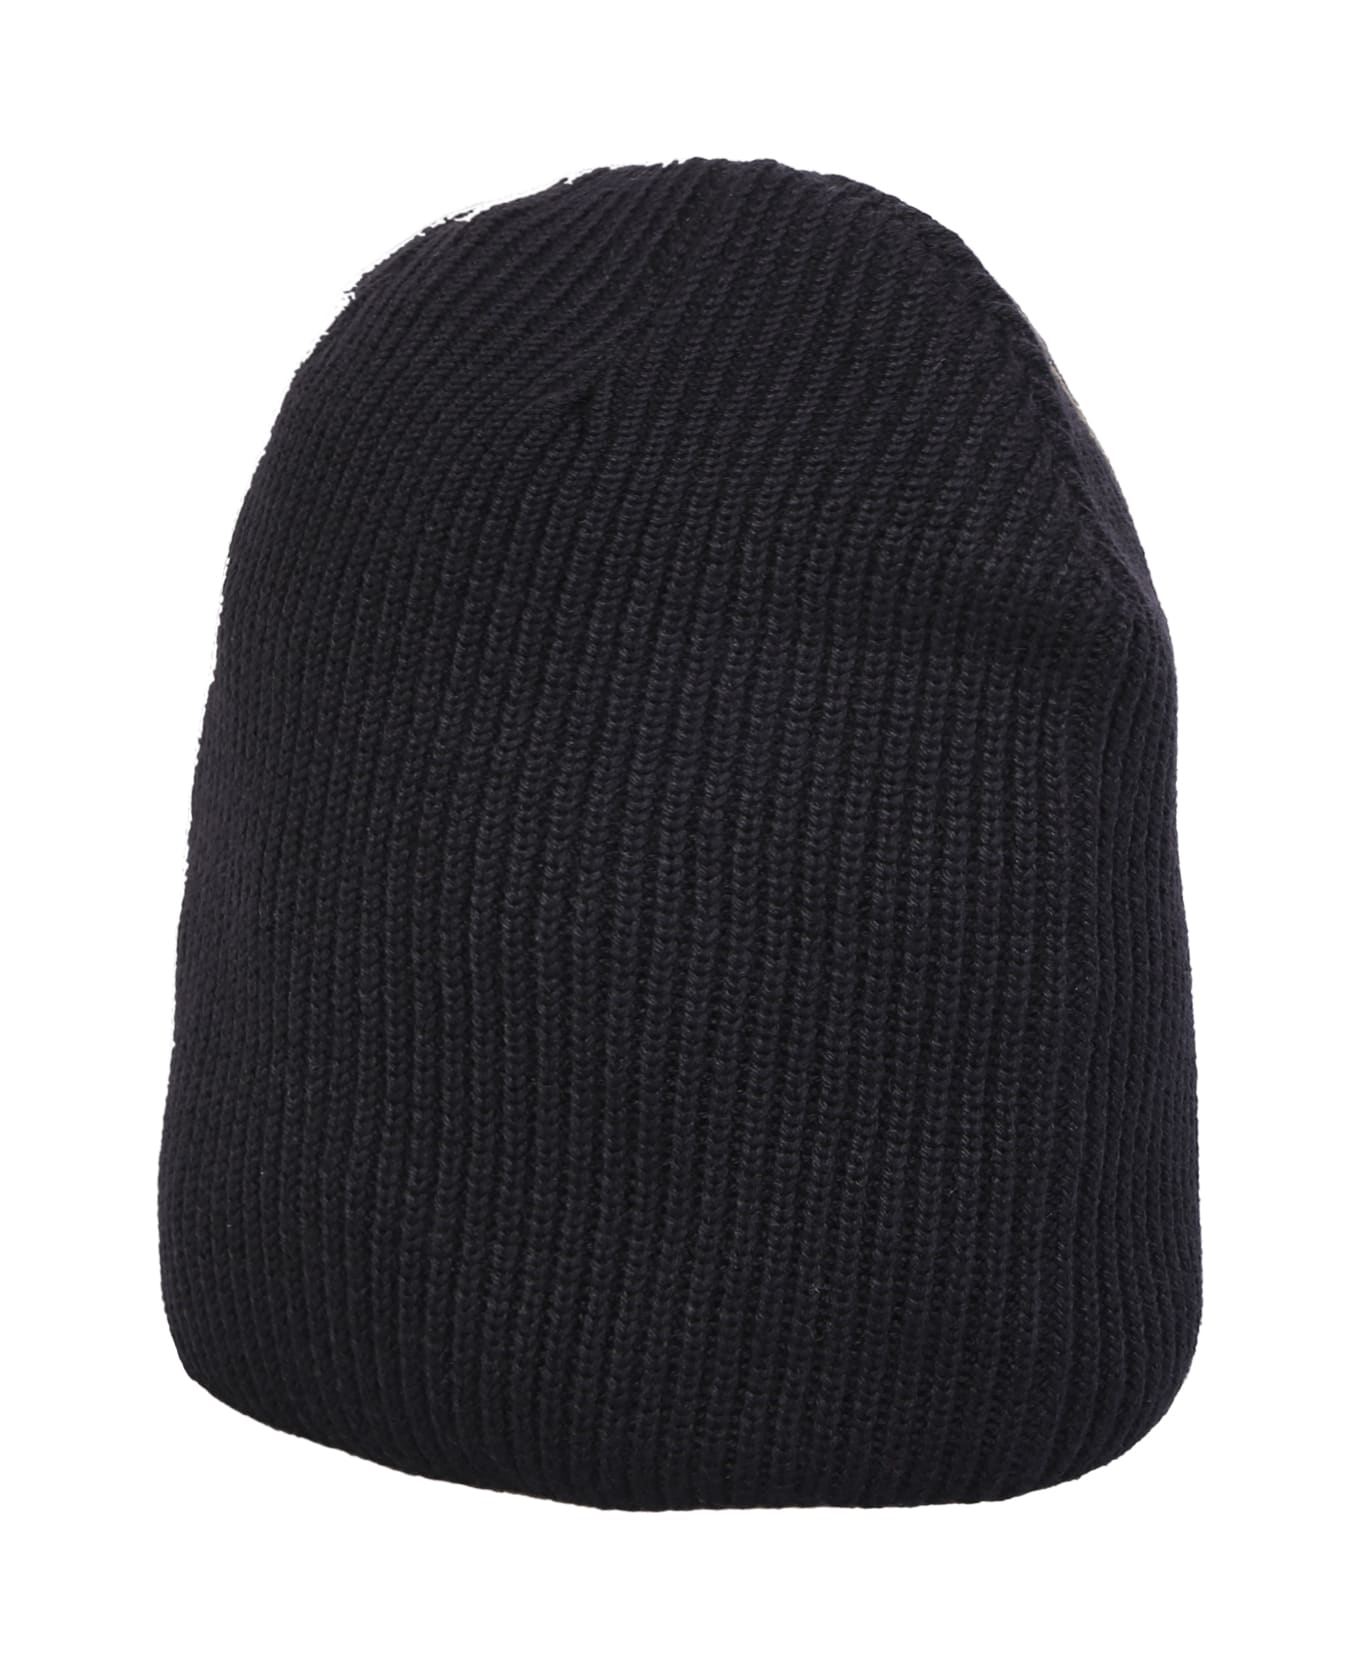 44 Label Group Ribbed Cap Black - Black 帽子